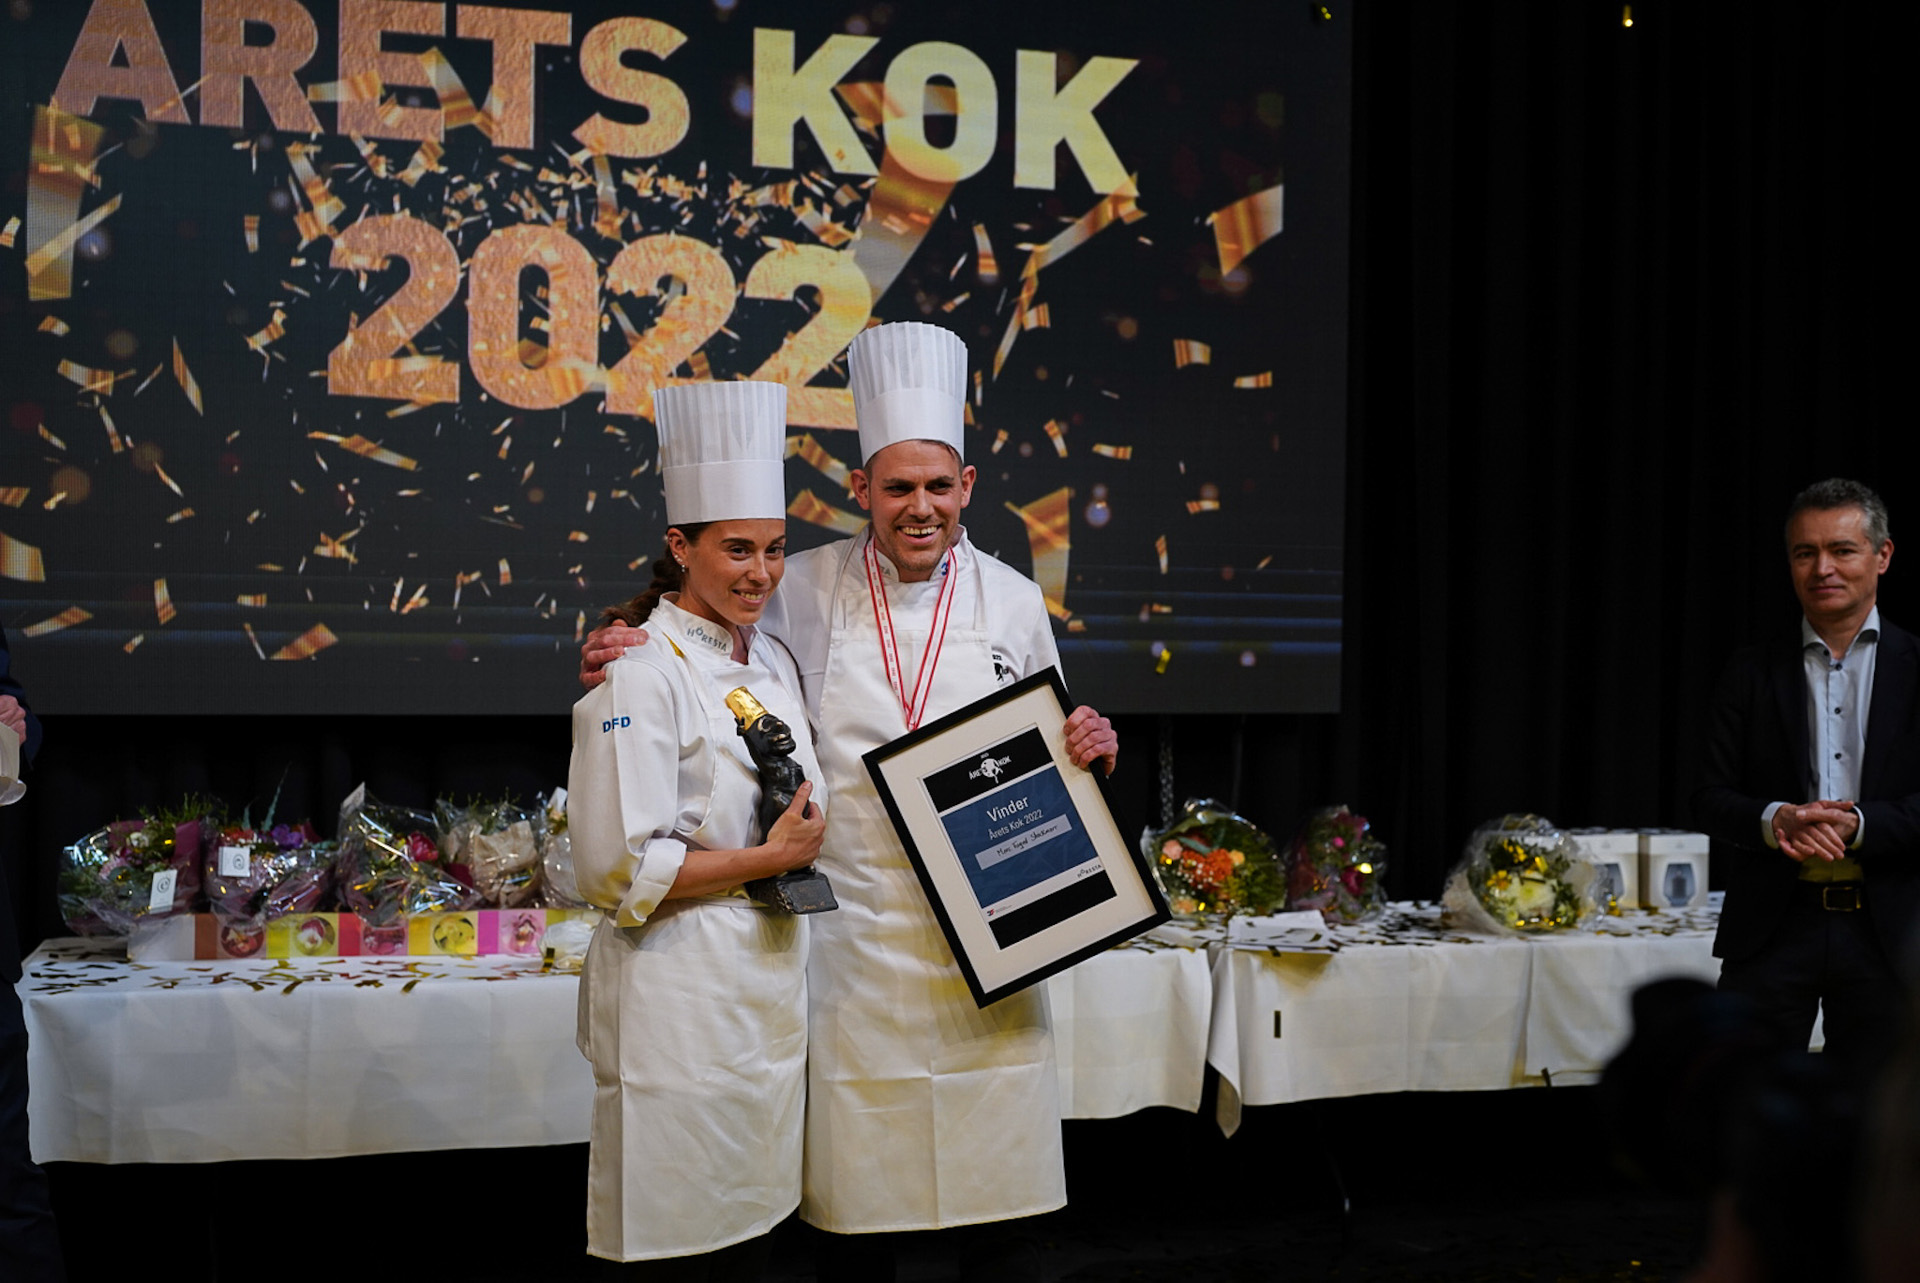 Årets Kok 2022 blev Marc Foged Stockmarr fra Restaurant God Smag